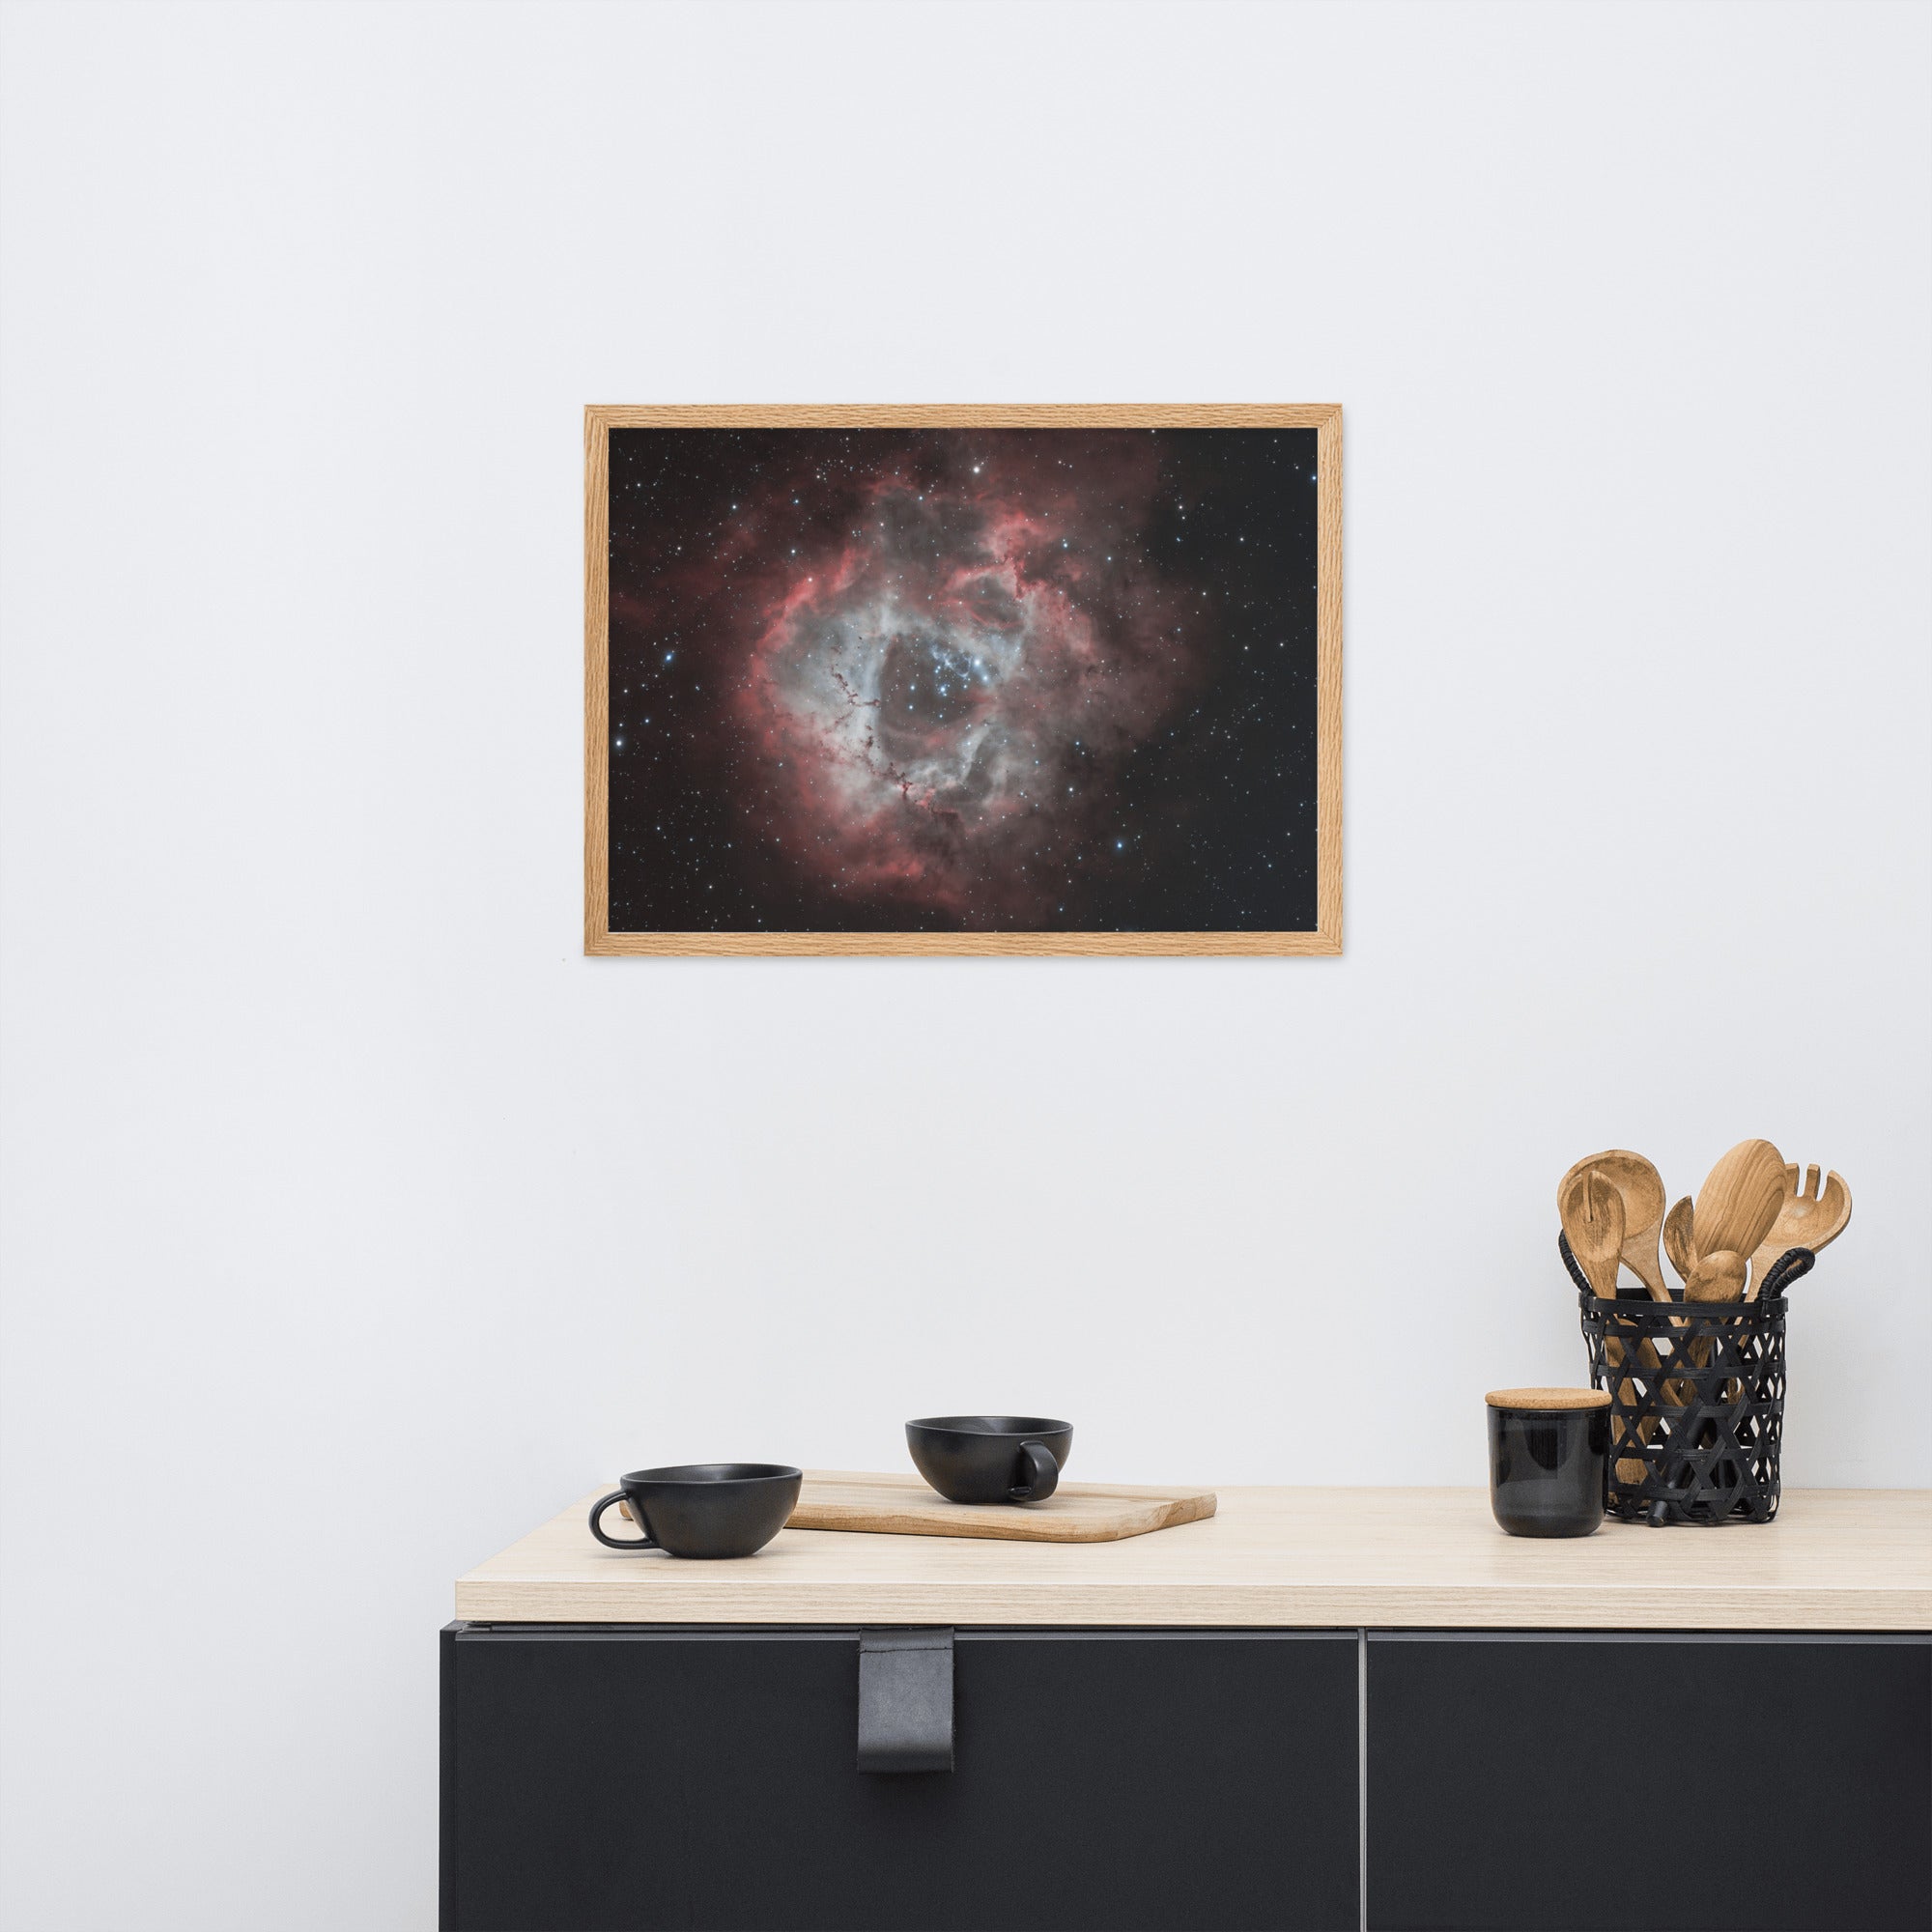 Affiche de la 'Nébuleuse de la Rosette', une image stellaire spectaculaire capturée par Adrien Louraco, présentant des gaz colorés et des étoiles dans une composition astrale enchanteresse, destinée à être un élément de décoration murale captivant.